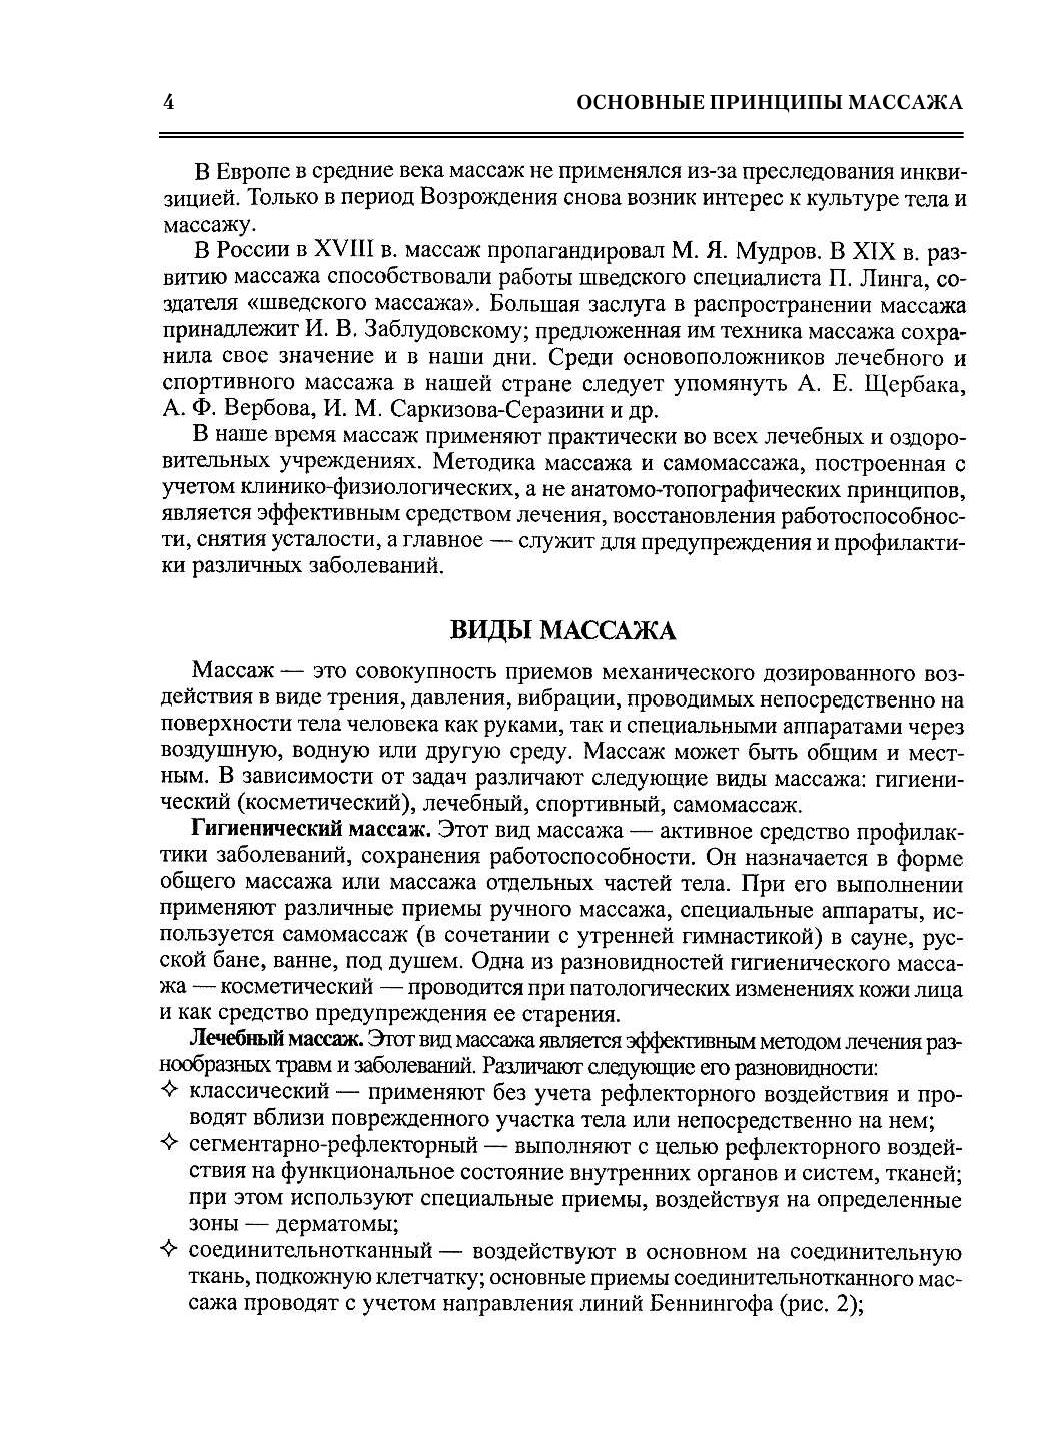 Васичкин Владимир Иванович Все про массаж - страница 4